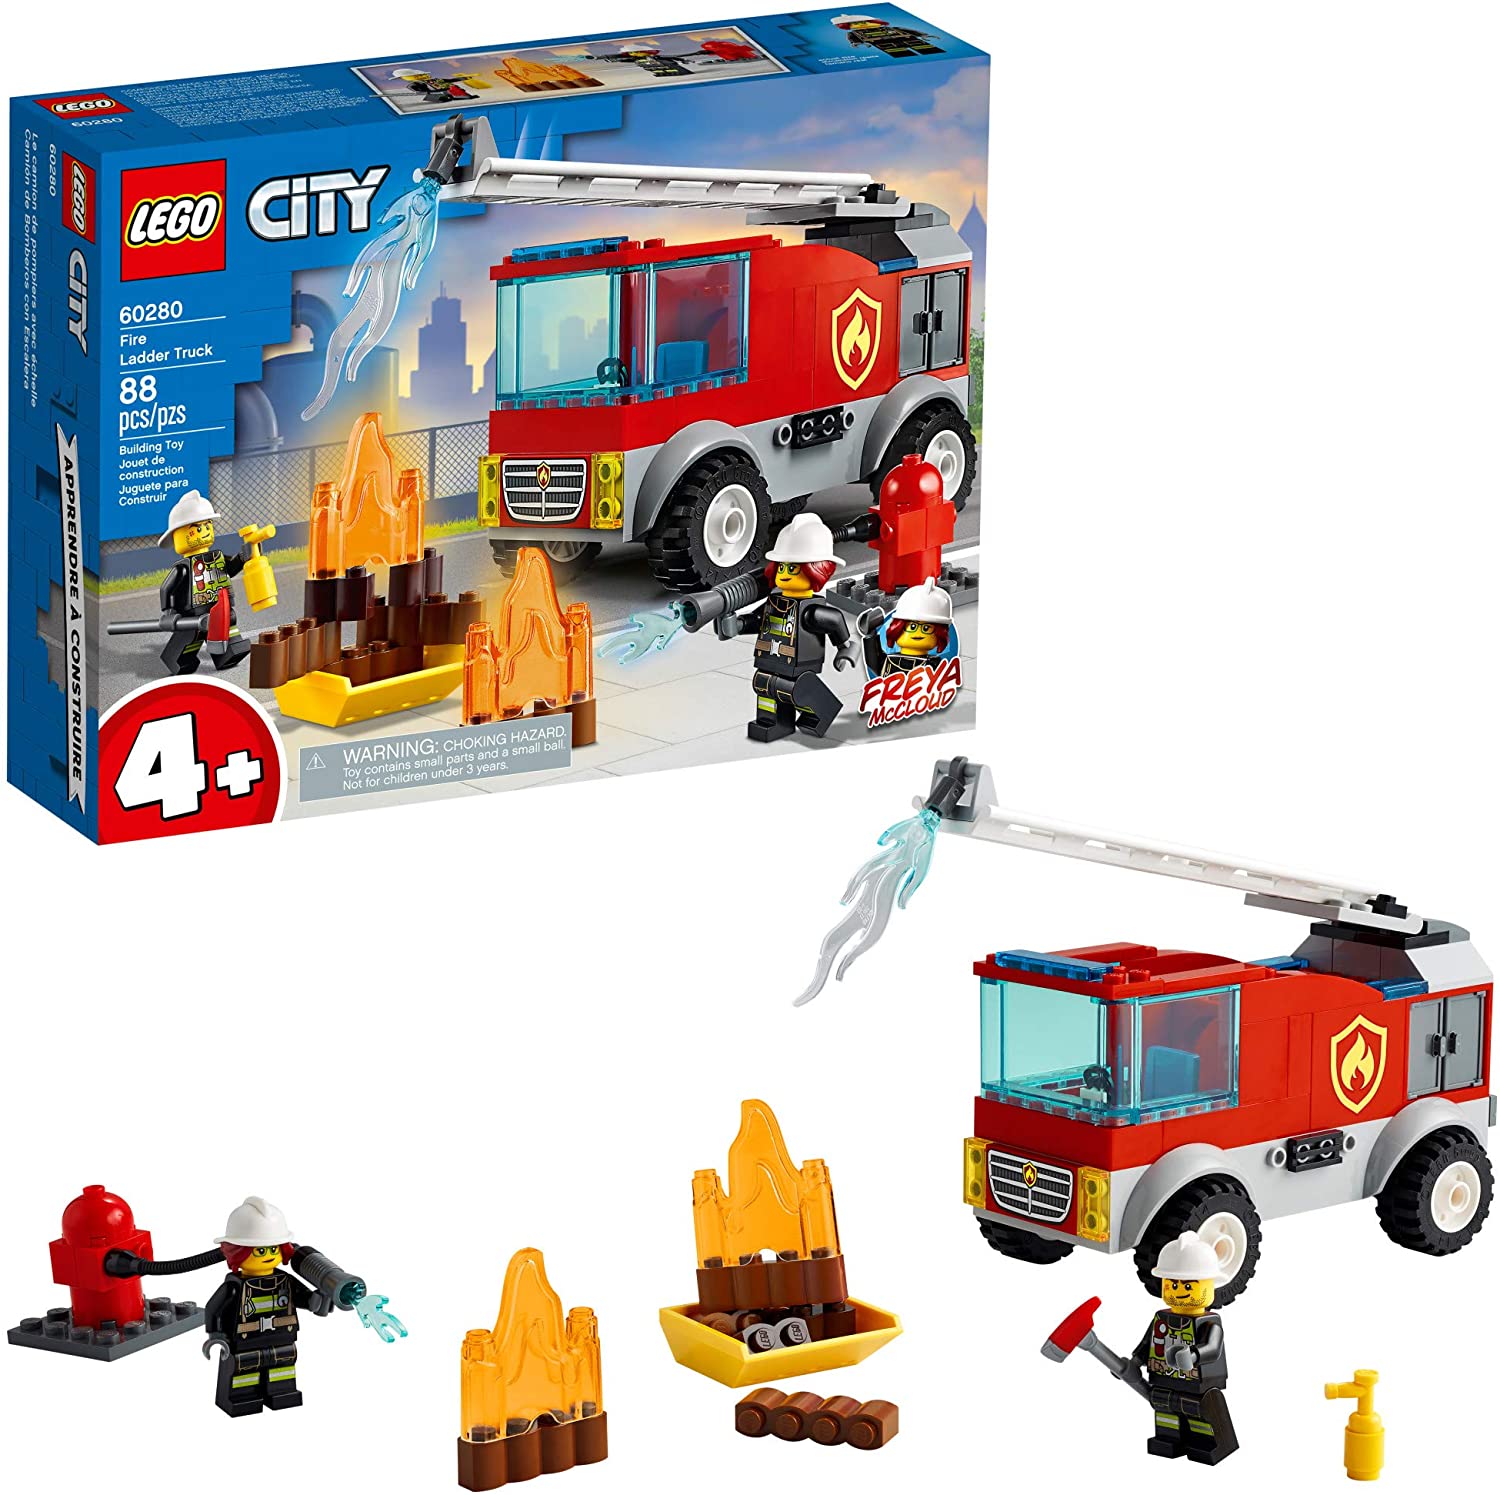 LEGO City Fire Ladder Truck  60280